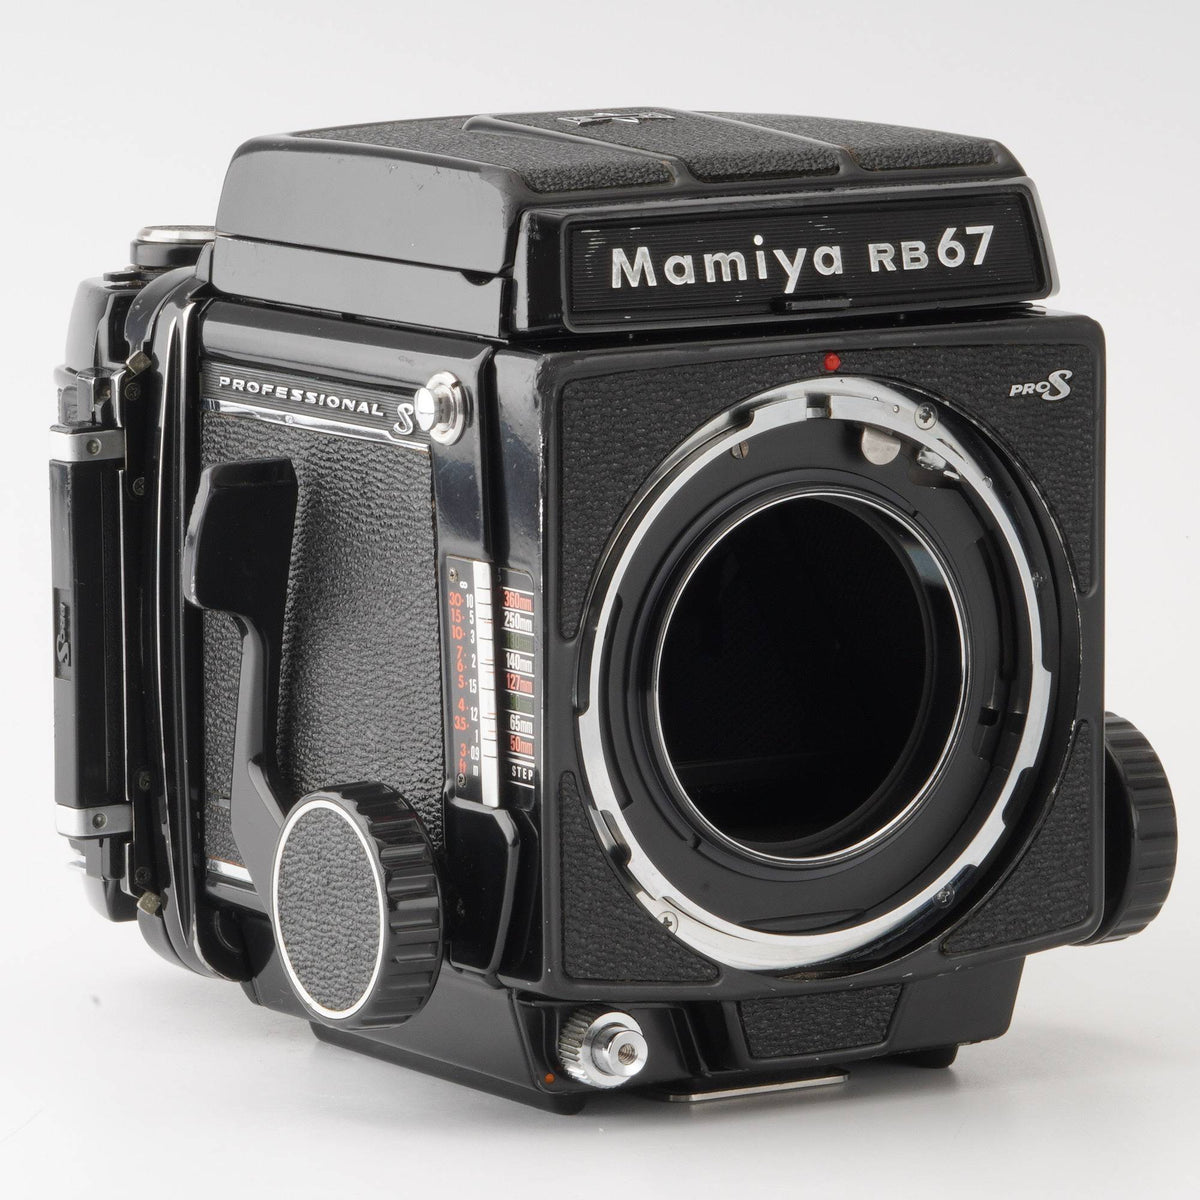 マミヤ Mamiya RB67 PRO S / MAMIYA-SEKOR C 50mm F4.5